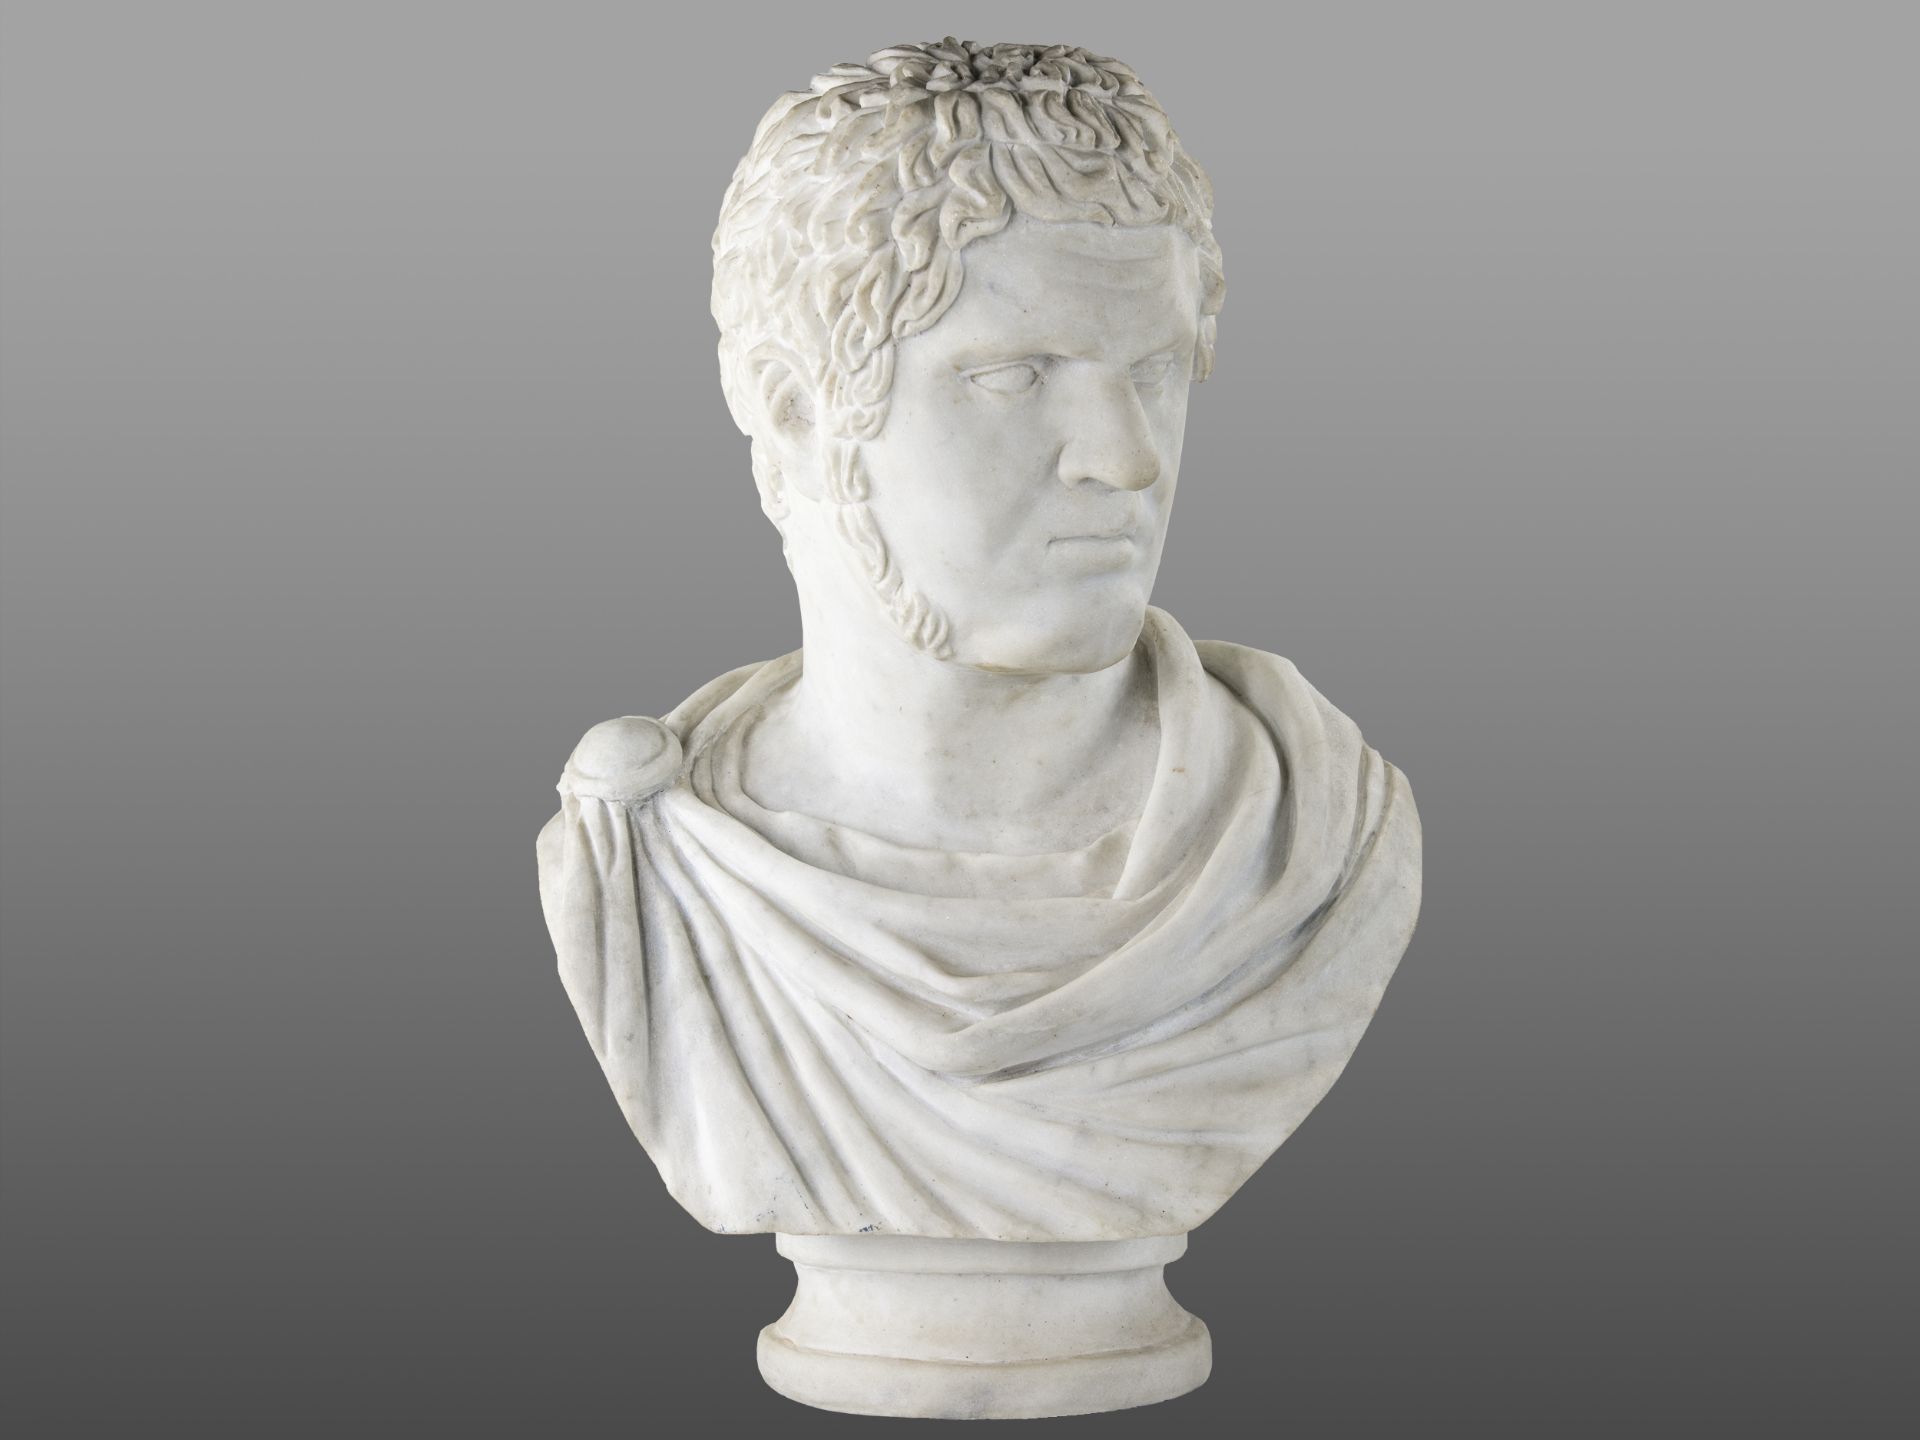 Büste des römischen Kaisers Caracalla, Meisterliche Bildhauerwerkstatt Italien/Rom, 19. Jahrhundert